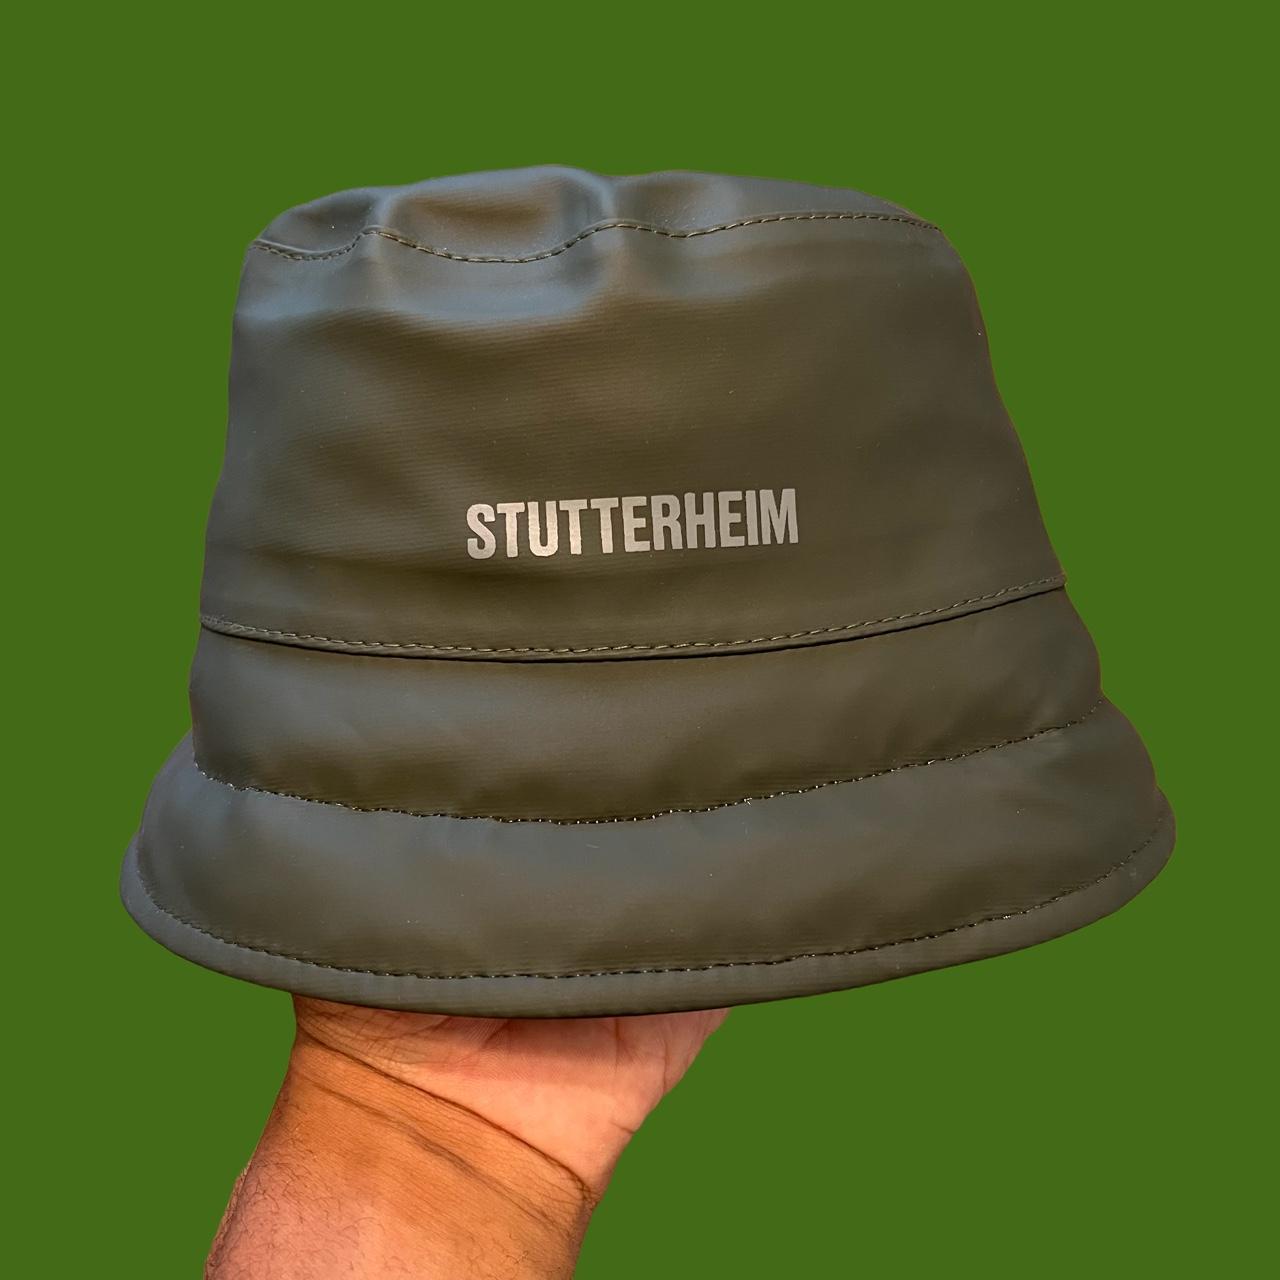 Stutterheim Men's Green and Khaki Hat